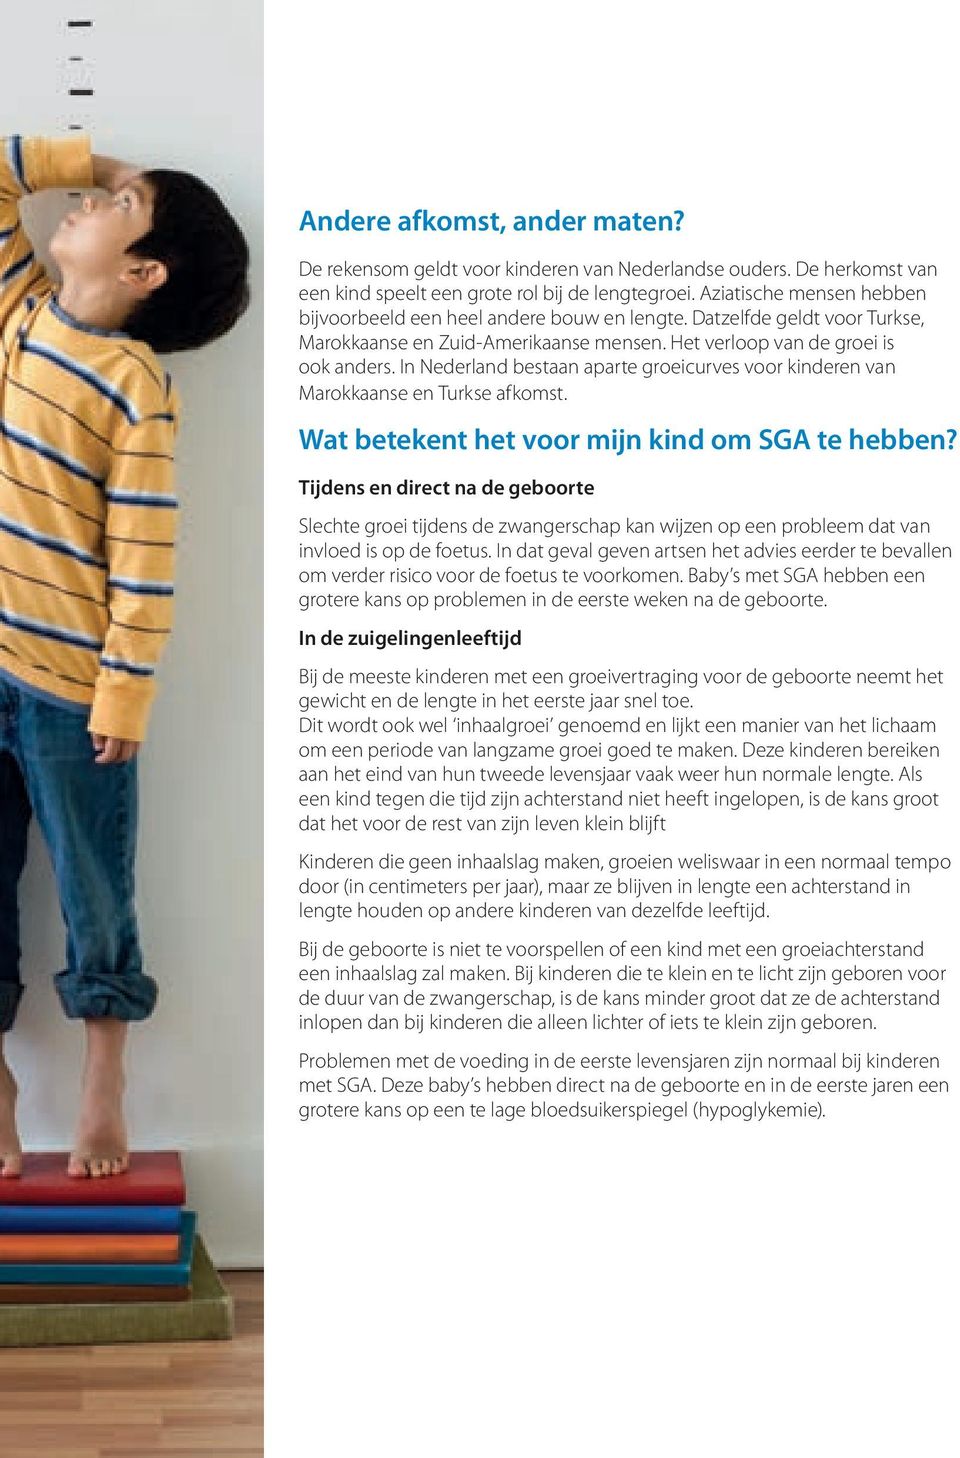 In Nederland bestaan aparte groeicurves voor kinderen van Marokkaanse en Turkse afkomst. Wat betekent het voor mijn kind om SGA te hebben?